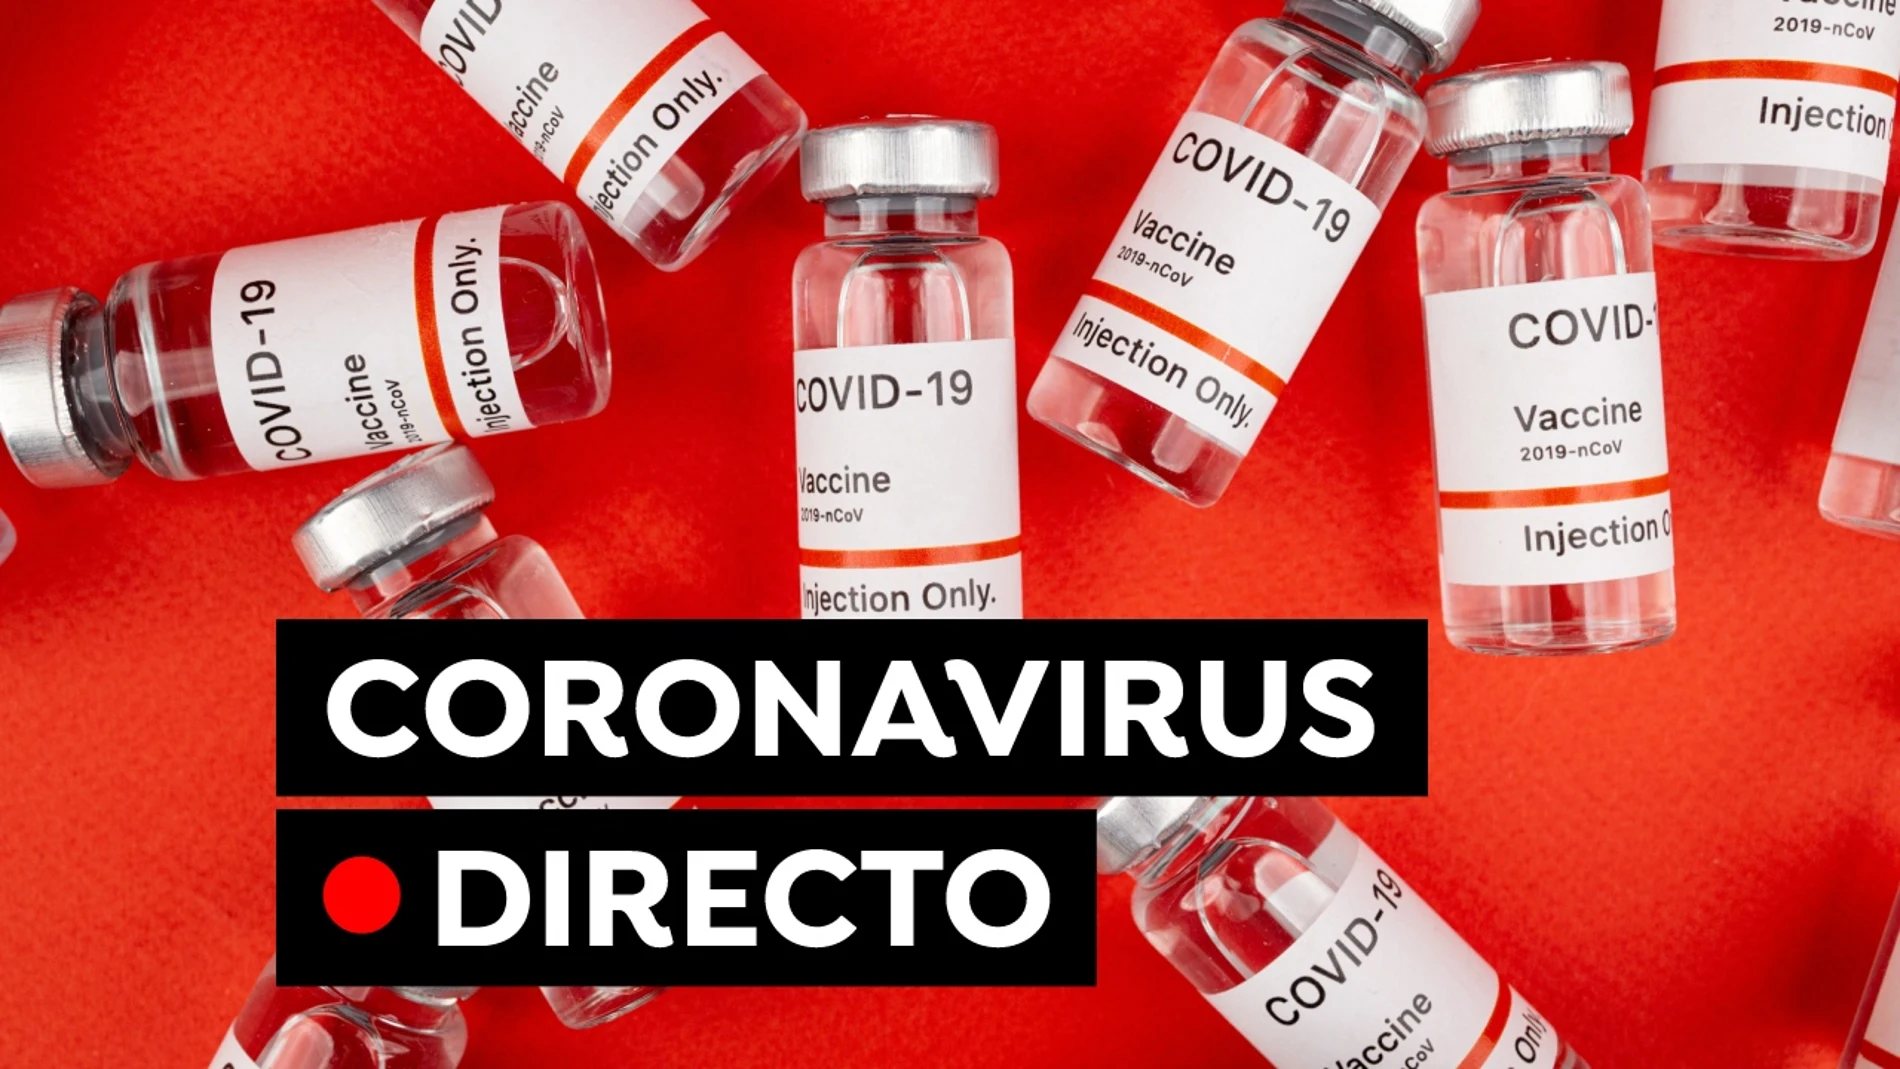 Coronavirus hoy: Última hora de la vacuna covid, restricciones y datos de contagios y fallecidos en España